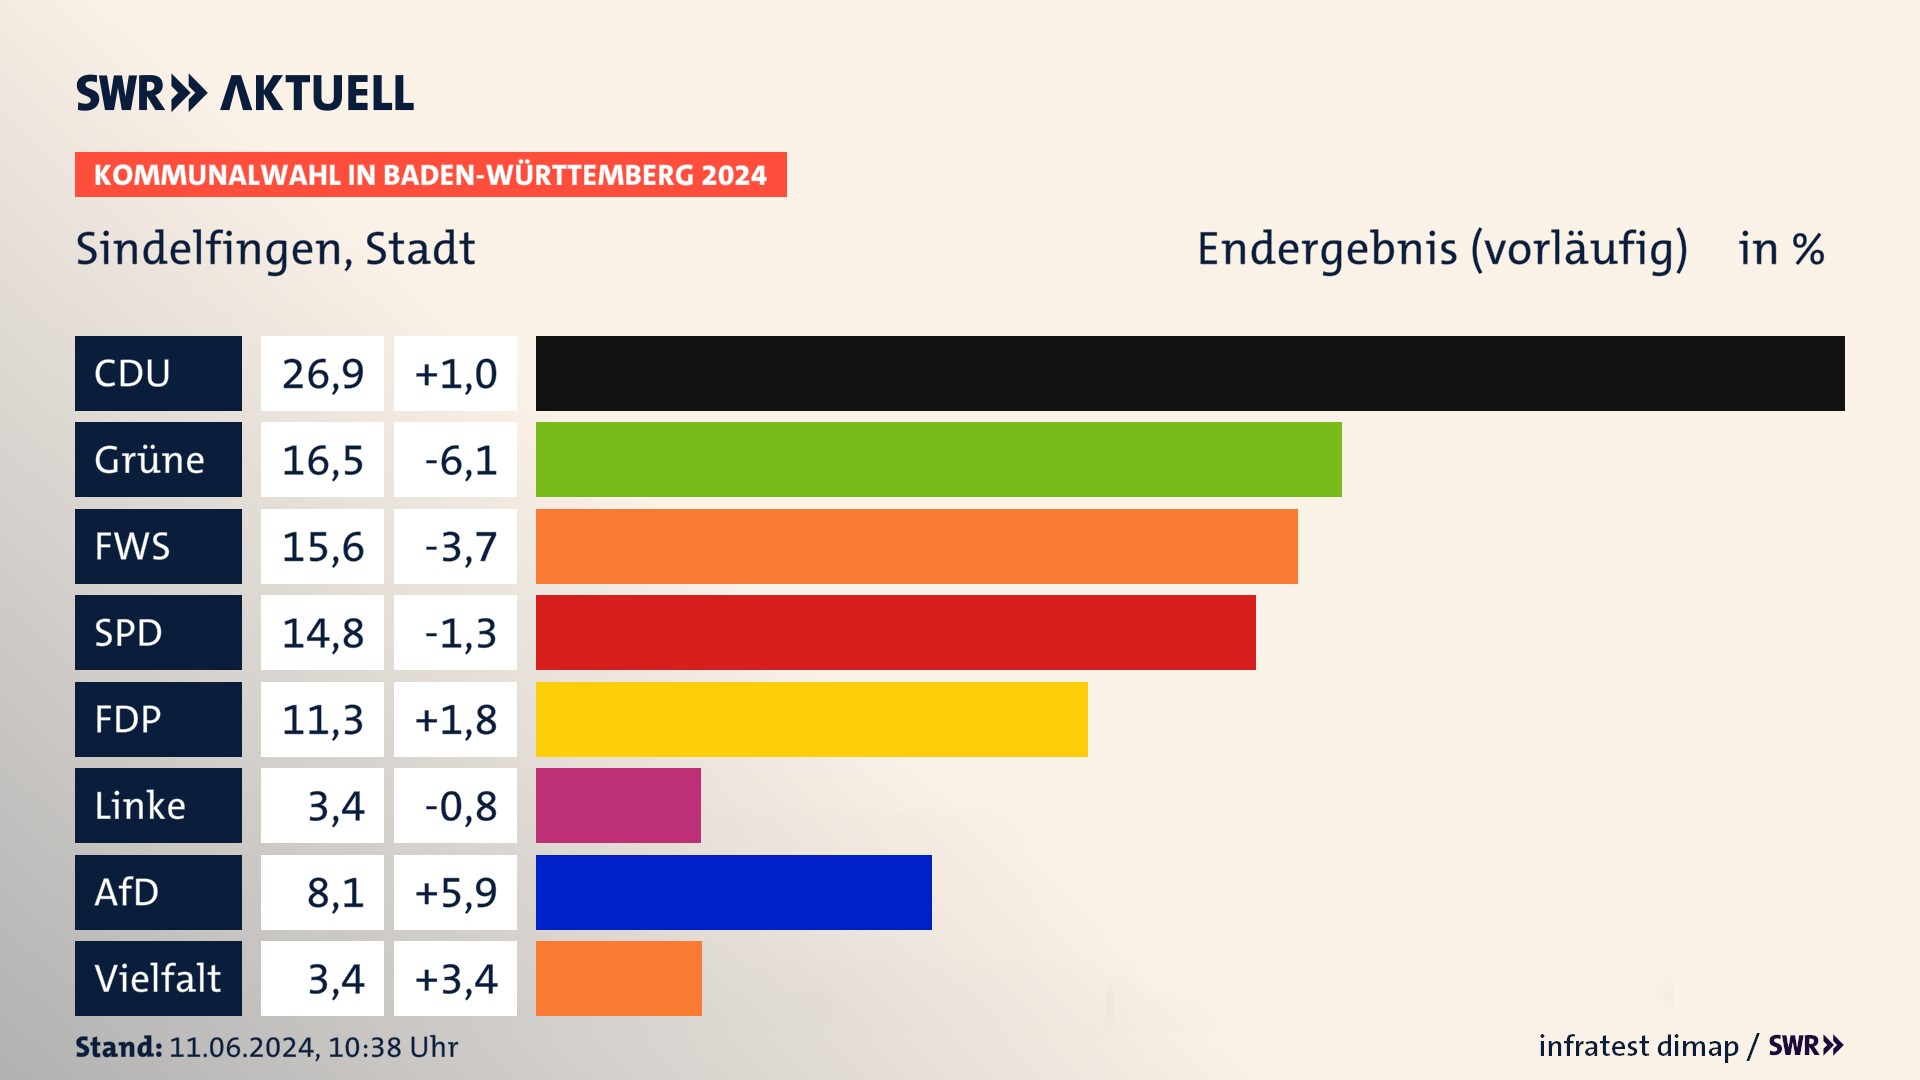 Kommunalwahl 2024 Vorlaeufigesendergebnis Zweitstimme für Sindelfingen. In Sindelfingen, Stadt erzielt die CDU 26,9 Prozent der gültigen  Stimmen. Die Grünen landen bei 16,5 Prozent. Die Wählervereinigung FWS erreicht 15,6 Prozent. Die SPD kommt auf 14,8 Prozent. Die FDP landet bei 11,3 Prozent. Die AfD erreicht 8,1 Prozent.